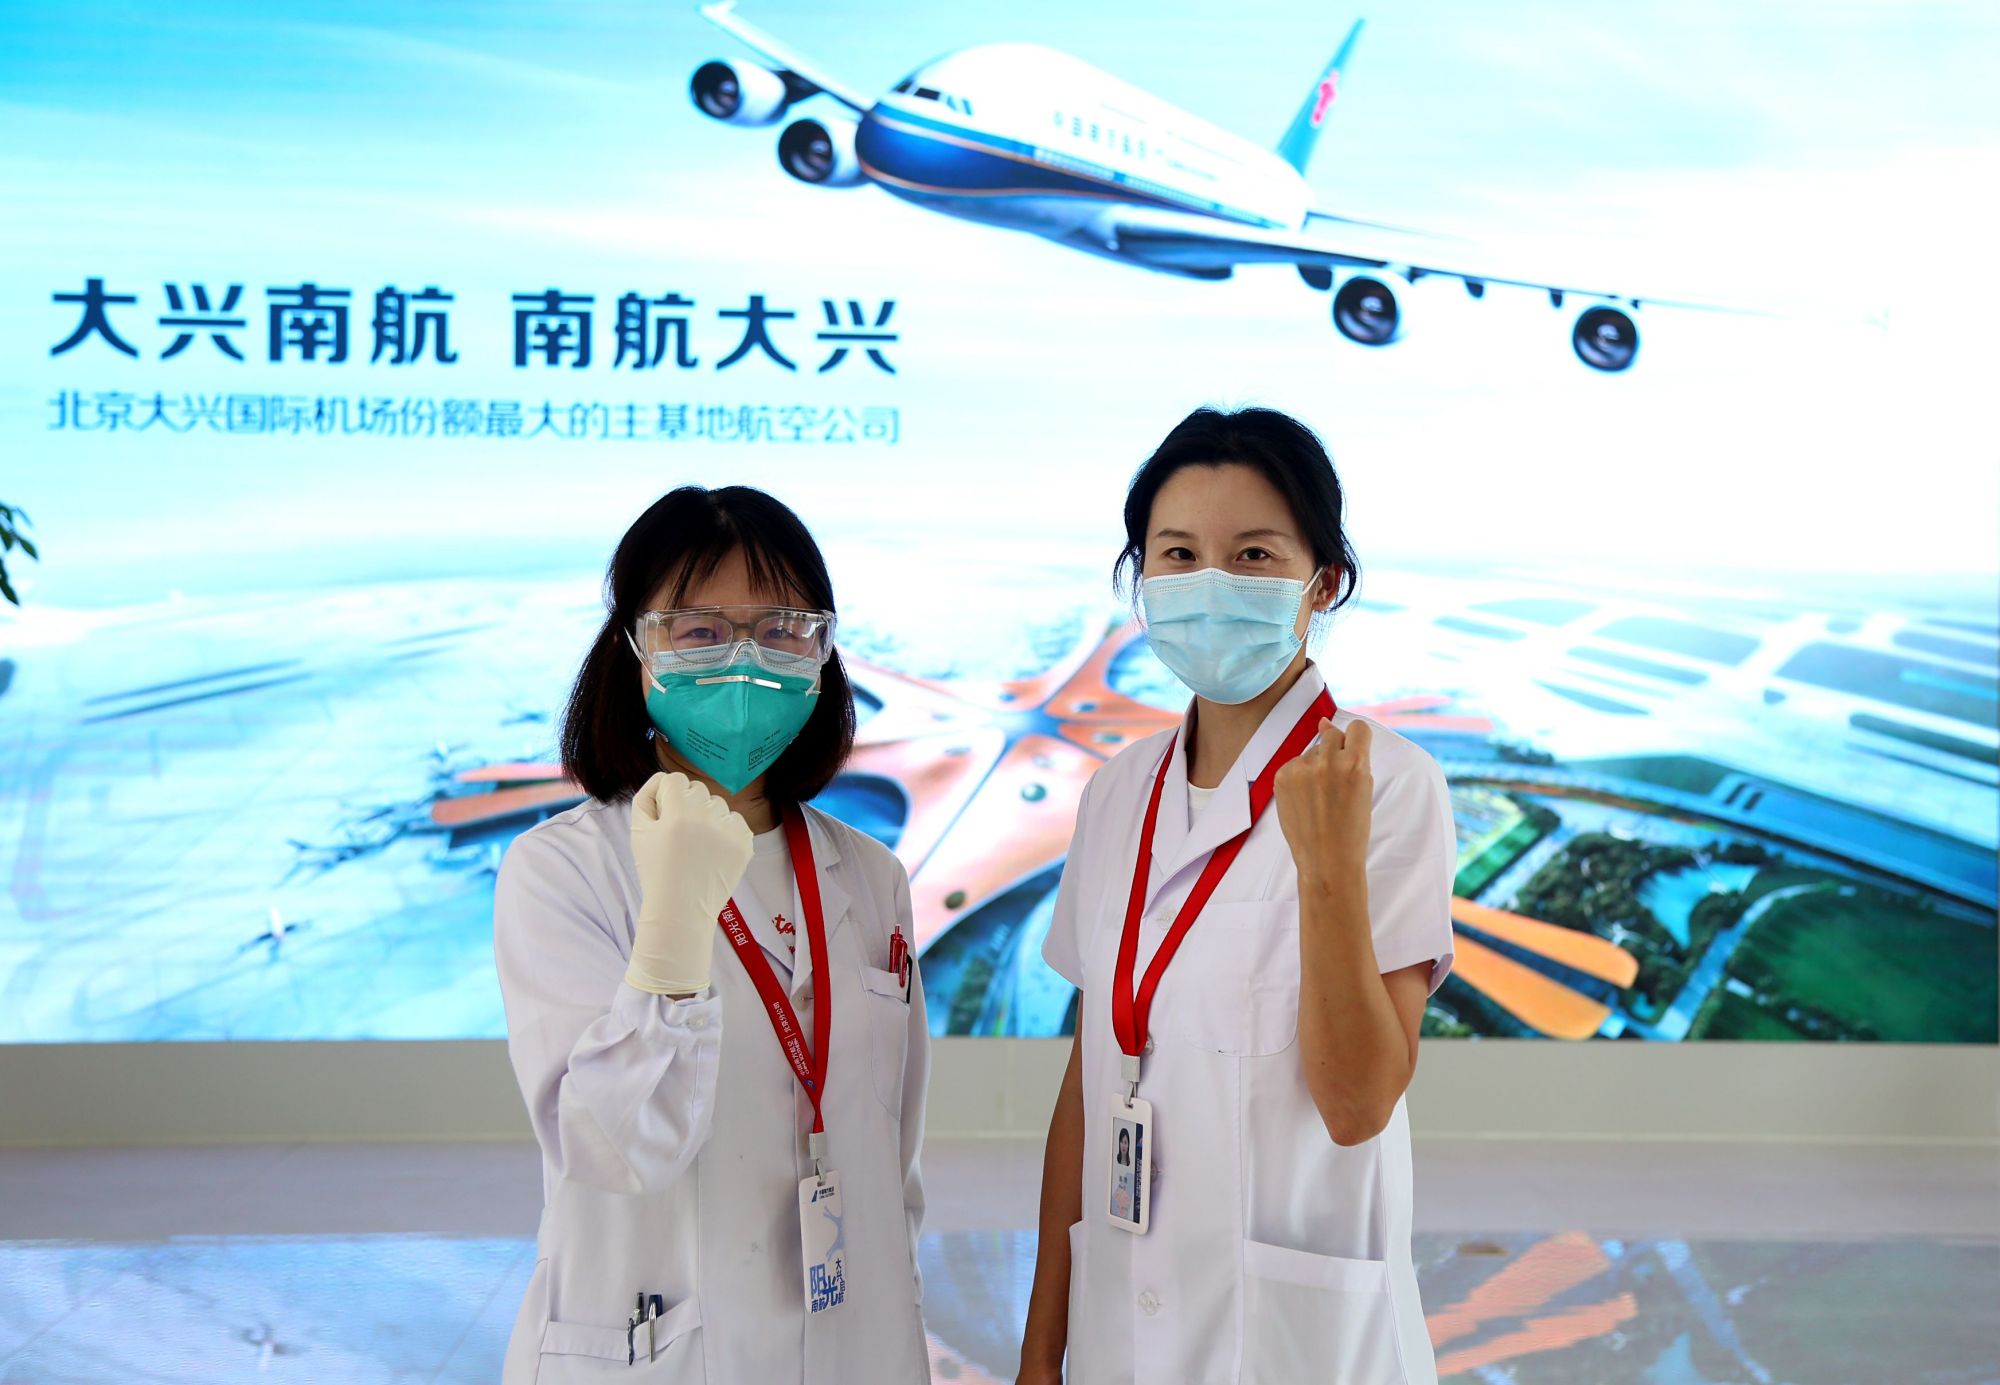 北京大兴机场2.7万余名工作者接受核酸检测 